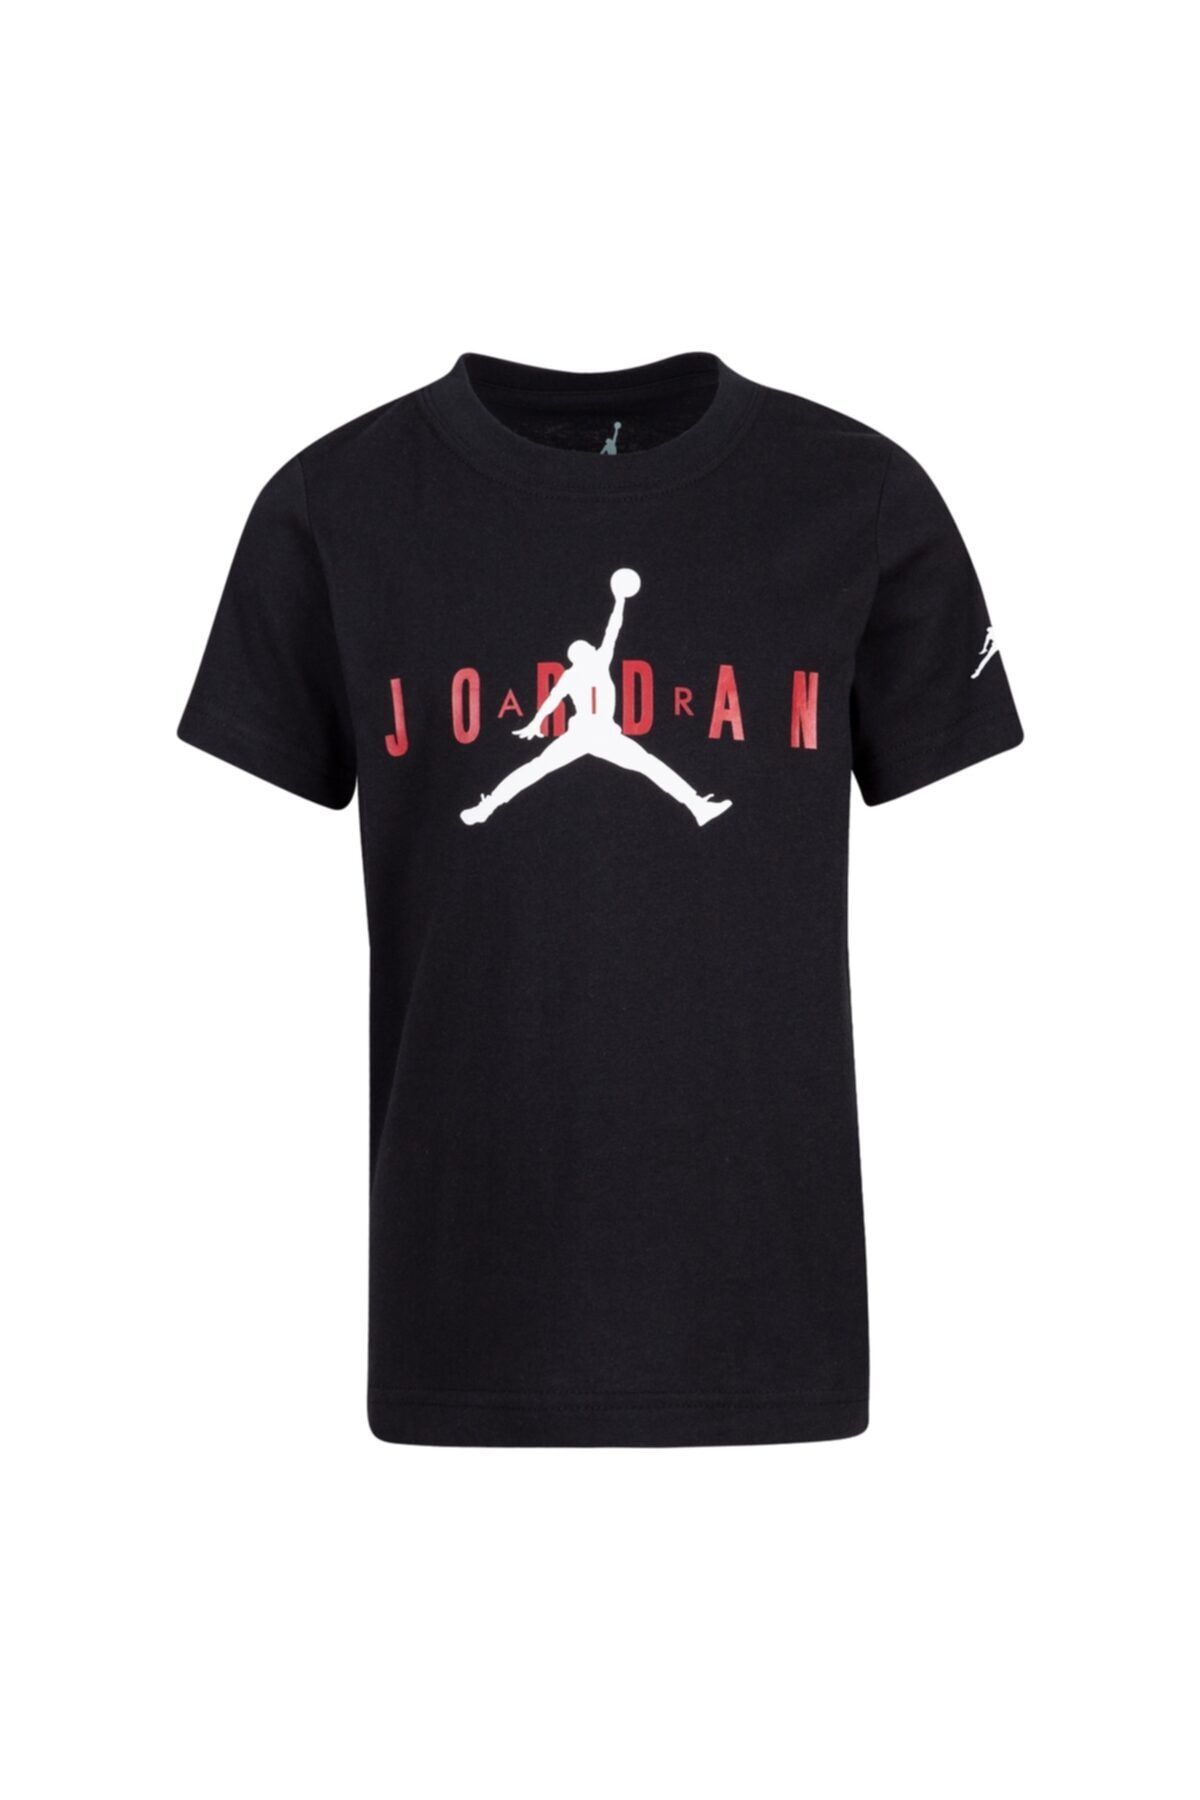 Nike Jordan Brand Tee 5 Erkek Çocuk Siyah  Tişört 855175-023